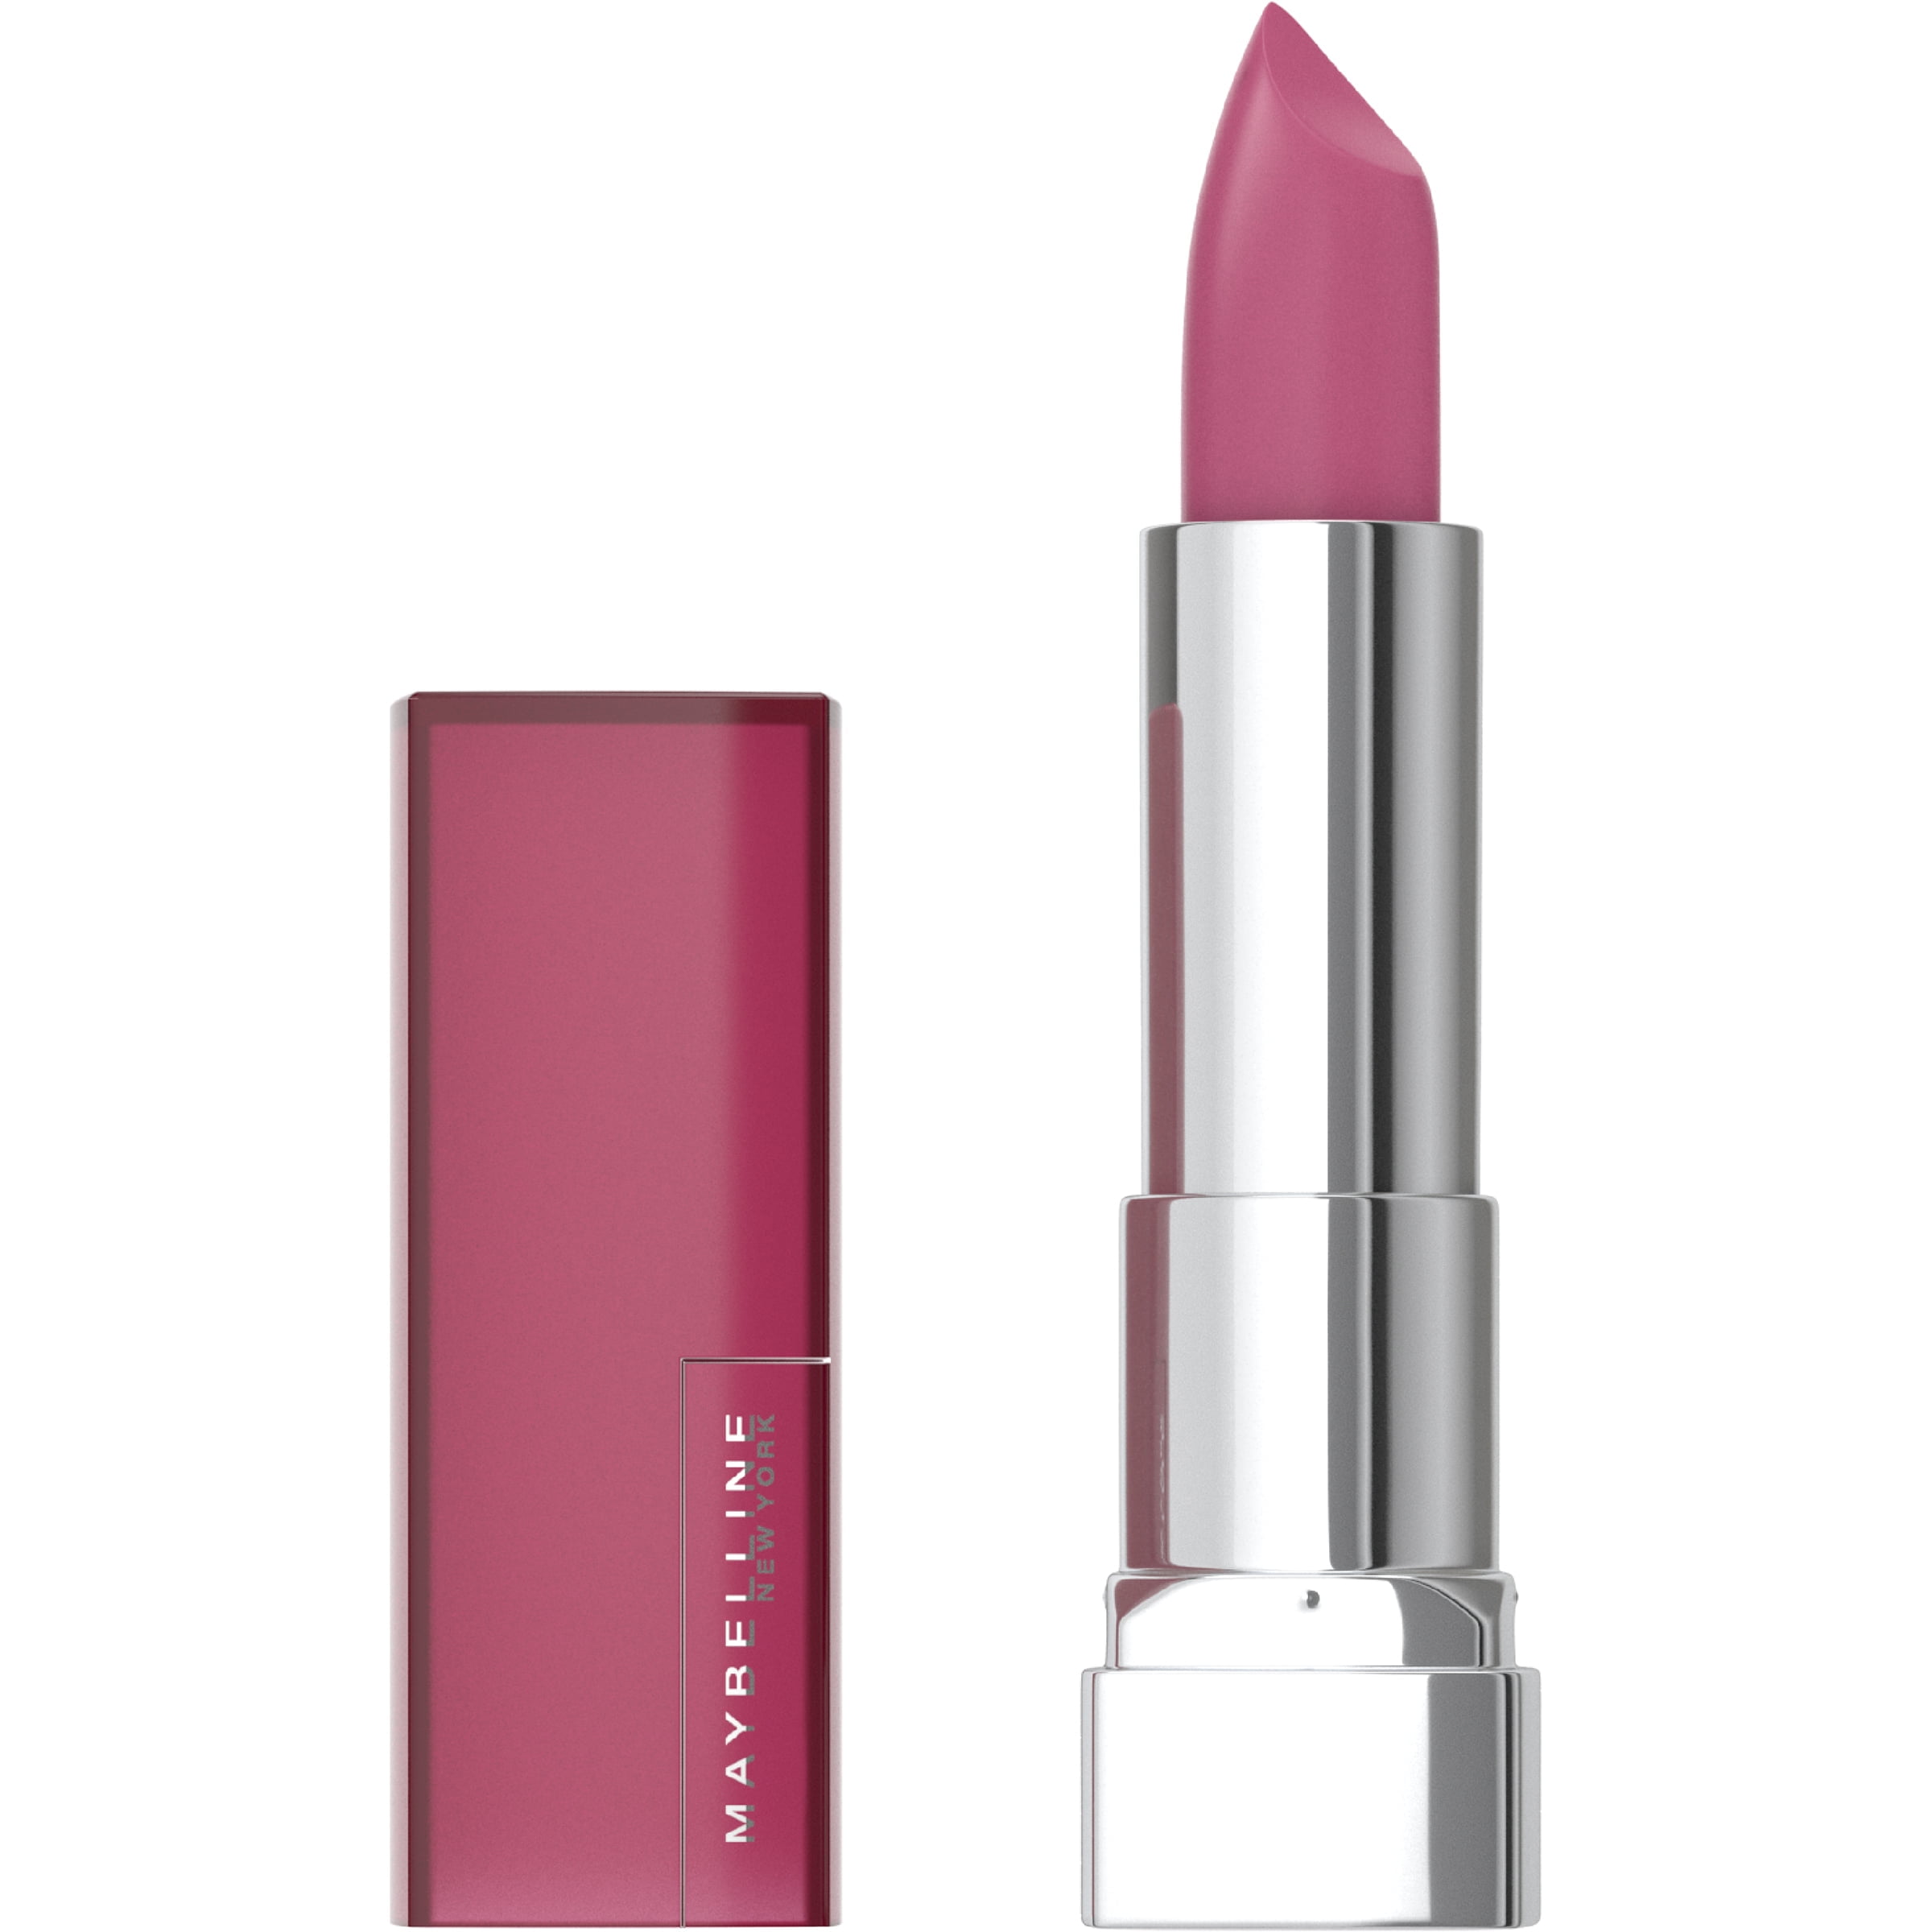 Maybelline Color Sensational Matte Finish Lipstick, Lust for Blush